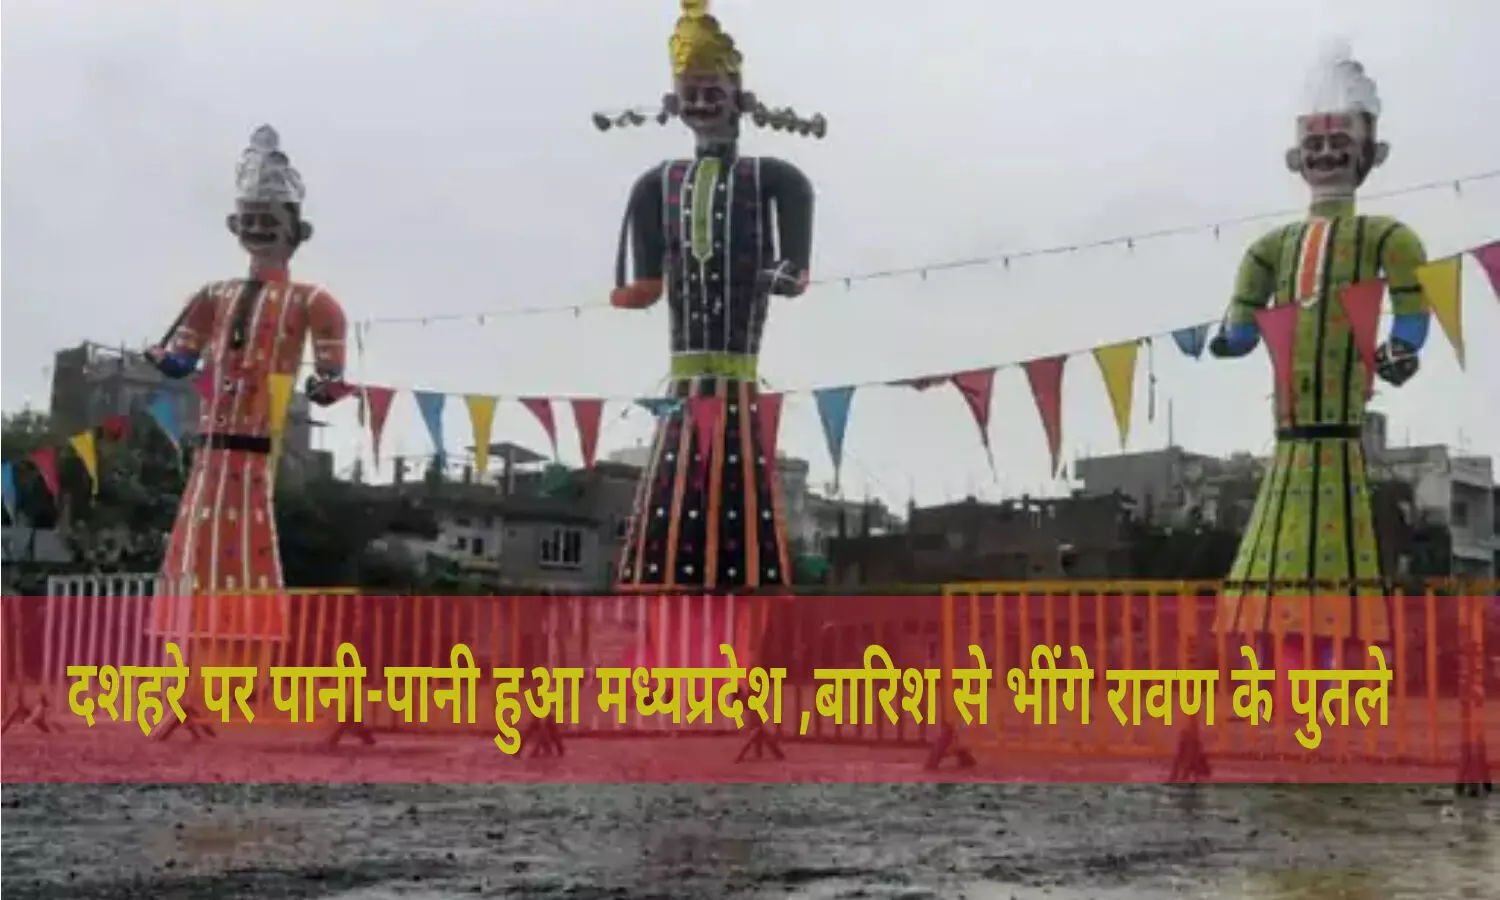 MP Weather : रावण के पुतले को पहनाई गई रेनकोट, राम के अग्निबाण से पहले इंद्रदेव की बारिश से भींगे पुतले, दशहरे पर बारिश बनी बाधा